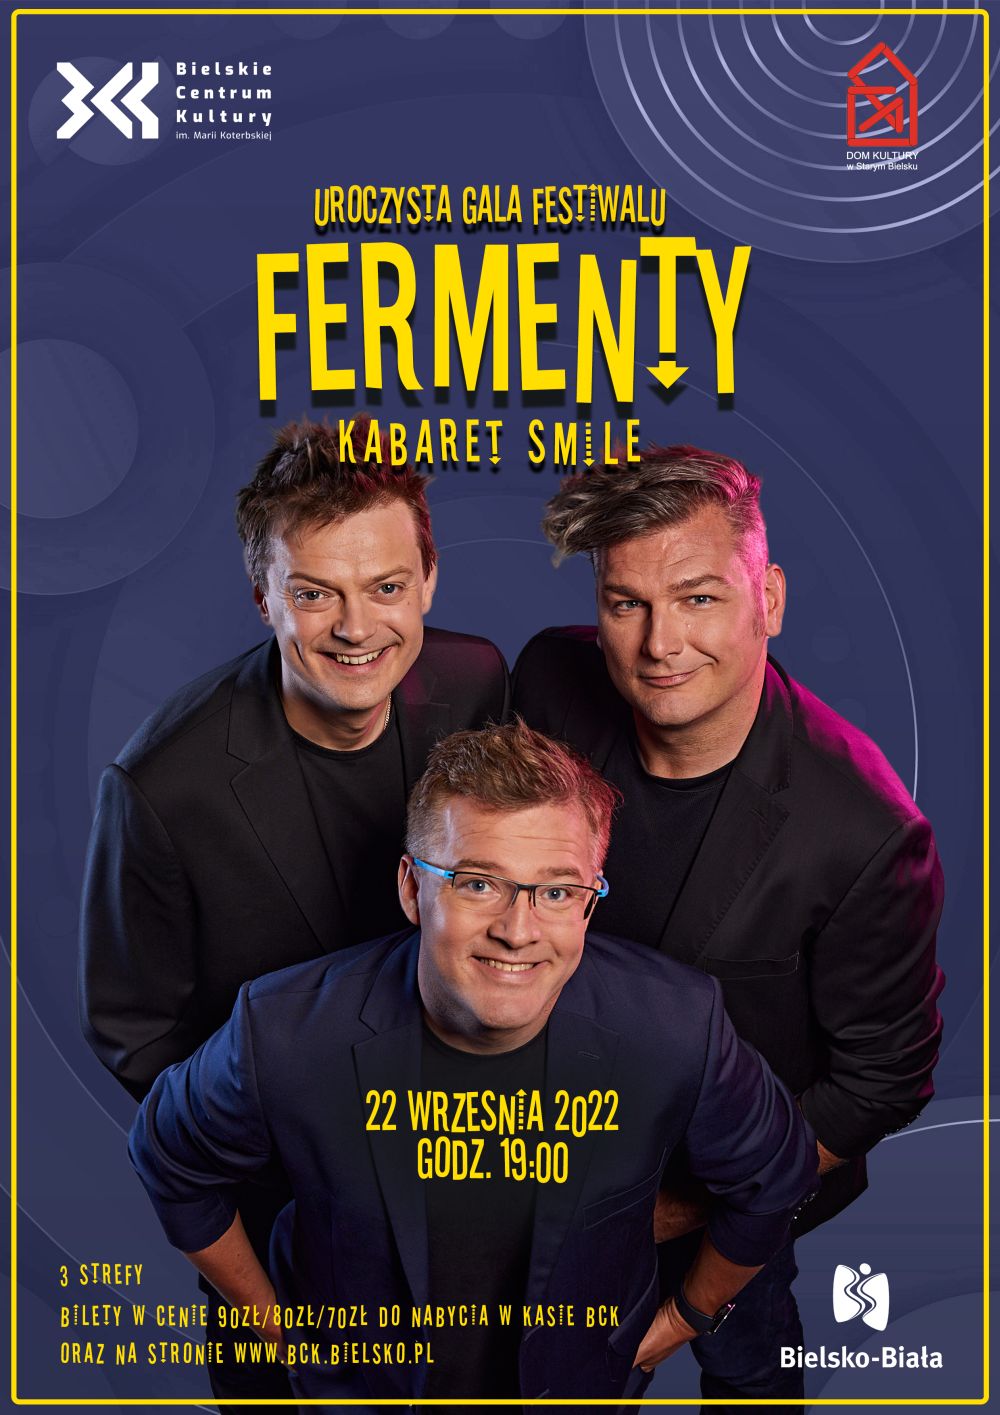  Fermenty 2022
 Na zdjęciu plakat kabaretu Smile